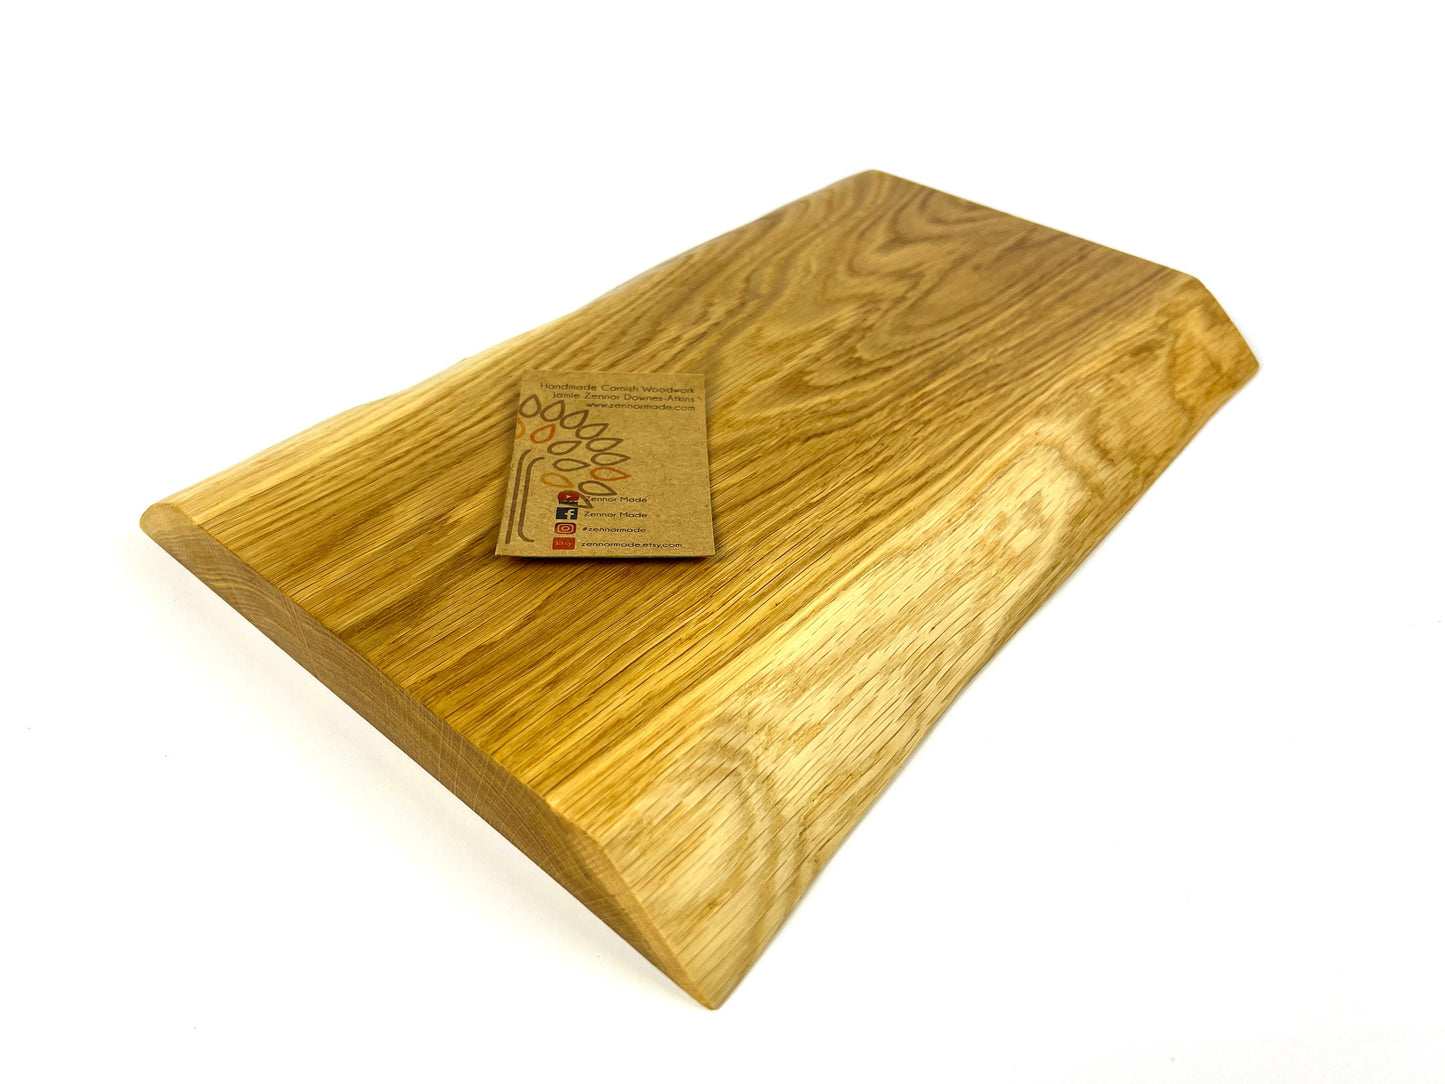 Cornish Oak 32 x 21 cm Chopping Board